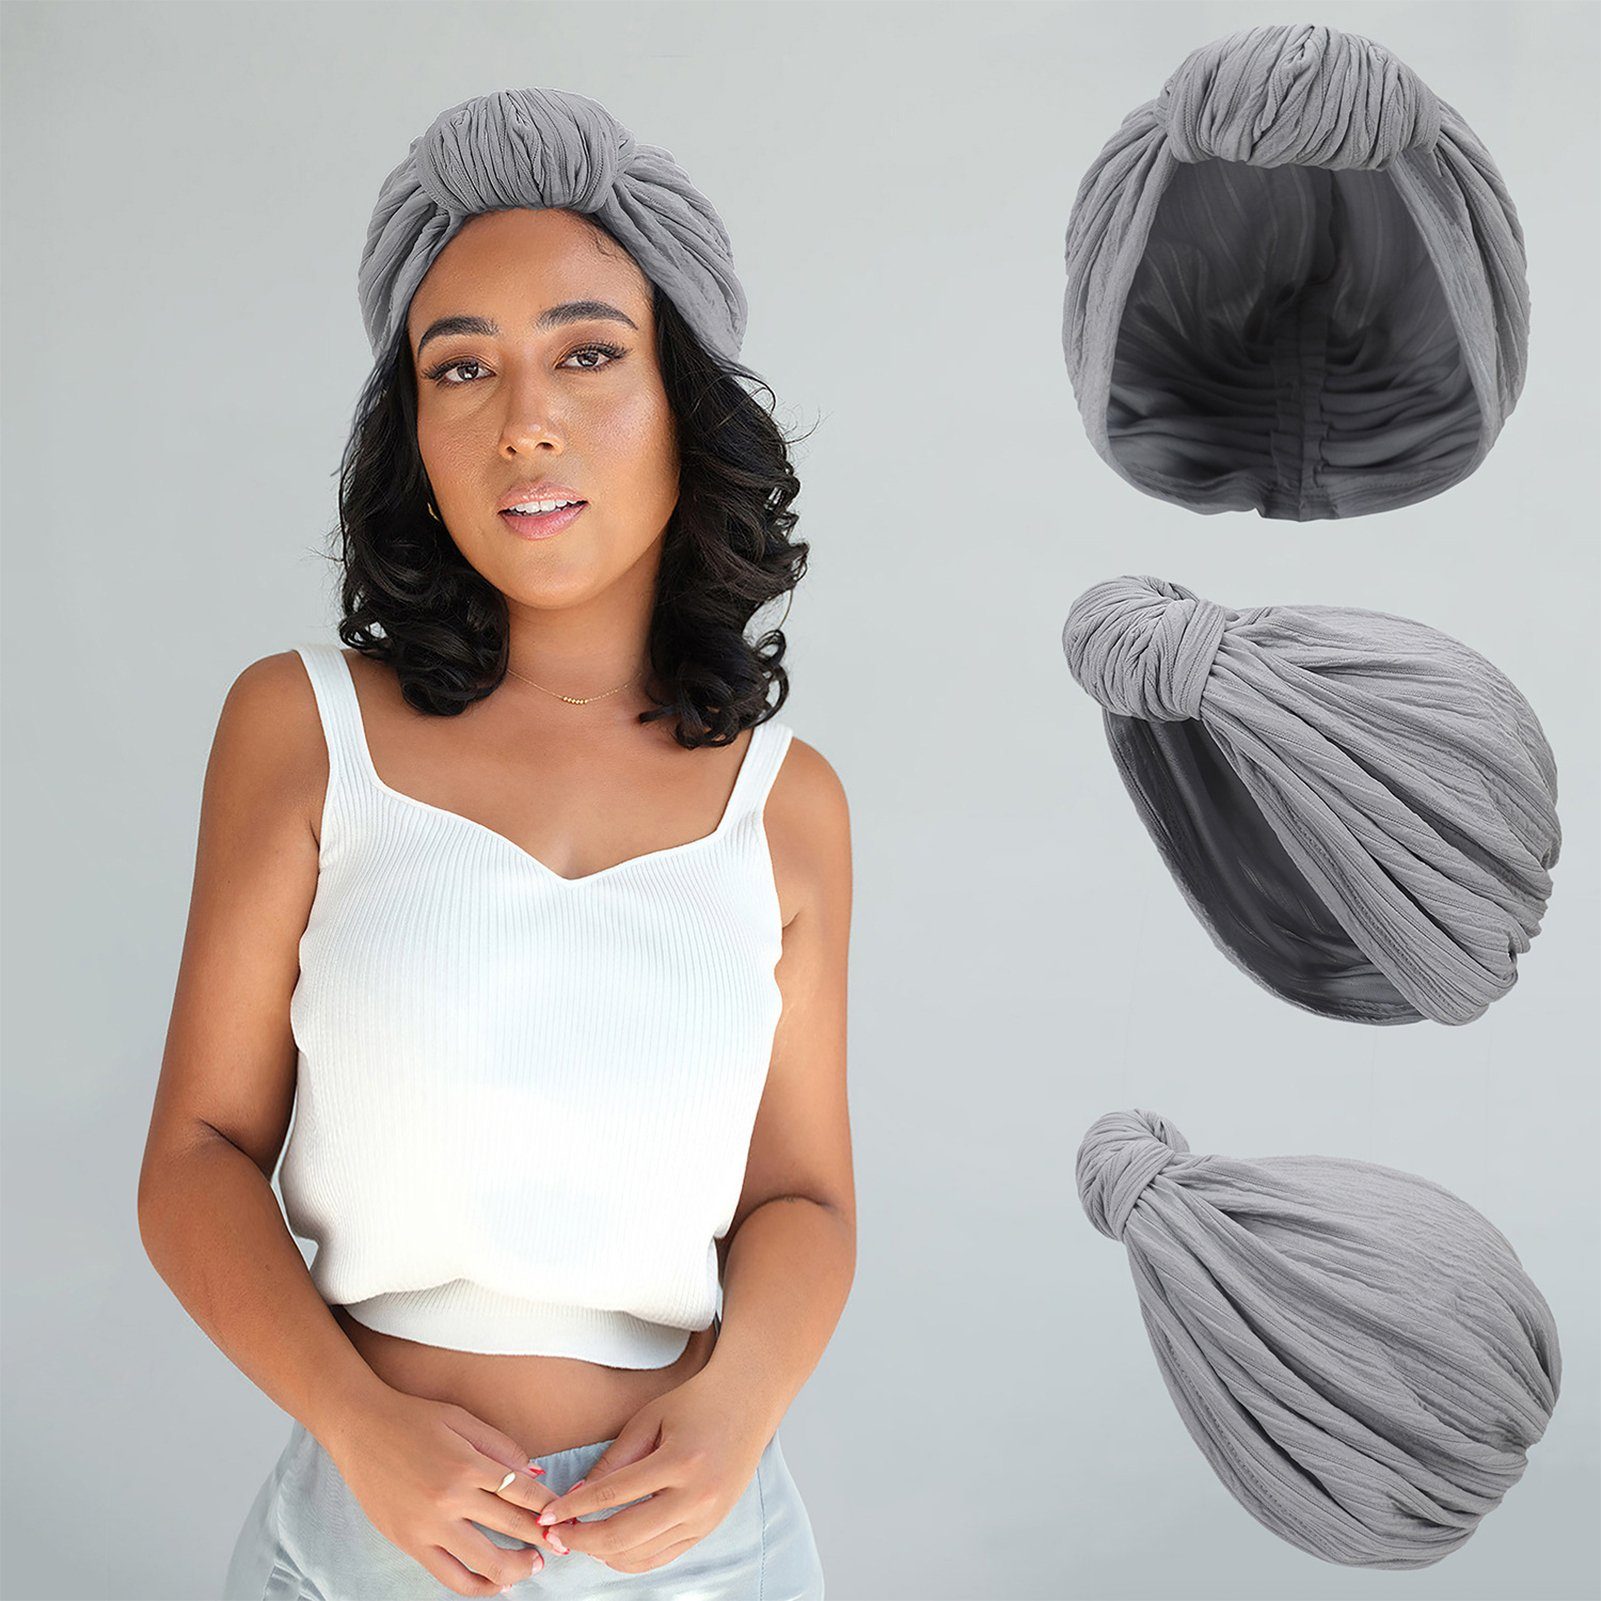 Blusmart Stirnband Modische Mütze Für Damen, Elastische Baumwolle, Knotenmütze, Stirnband hellgrau